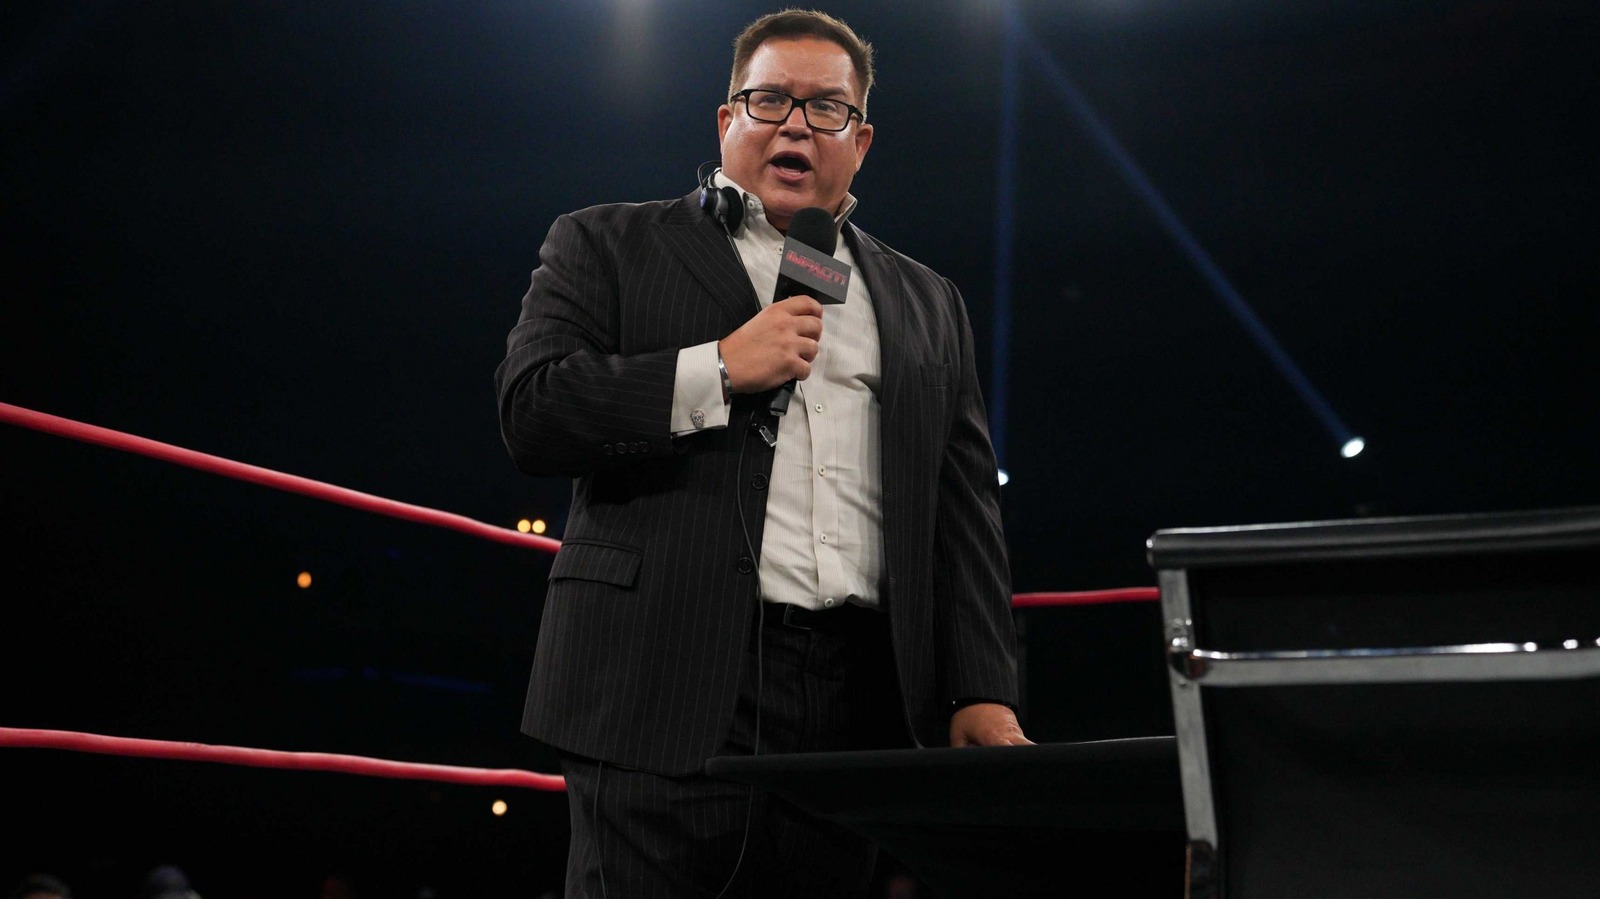 Se informa que el servicio de transmisión de Impact Wrestling sufrirá cambios